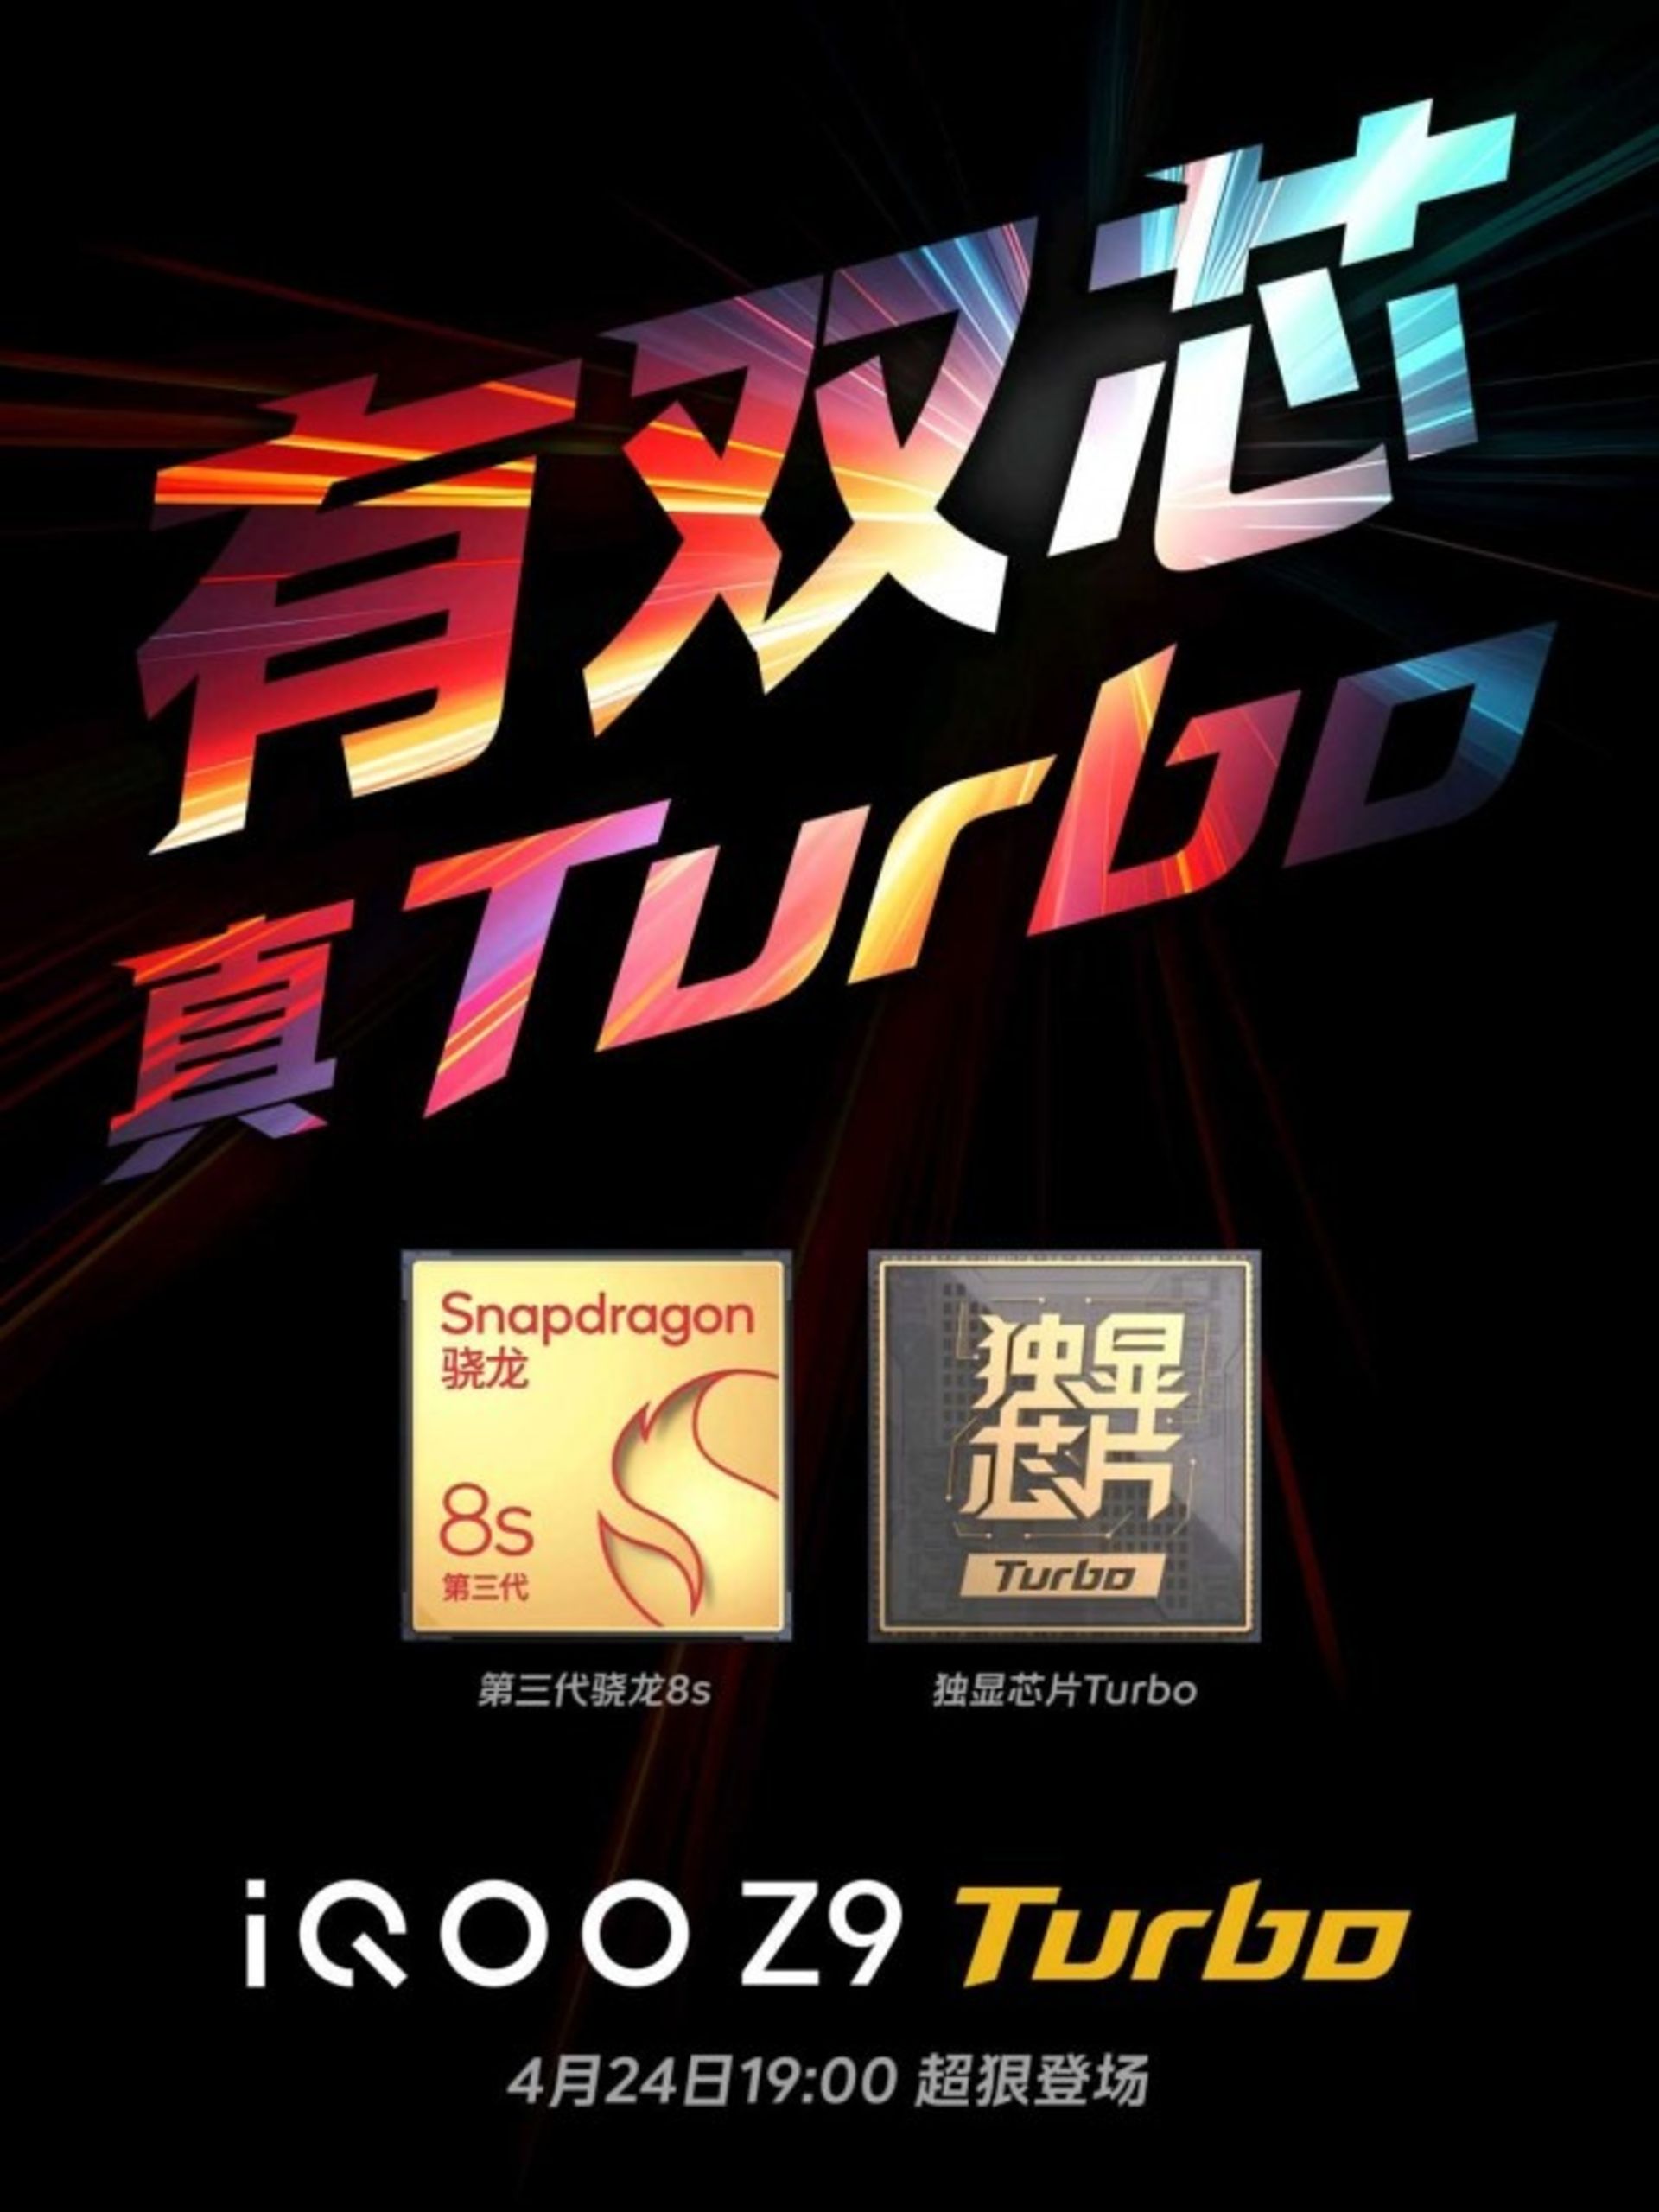 پوستر تبلیغاتی گوشی آیکو Z9 توربو و نمایش مدل پردازنده